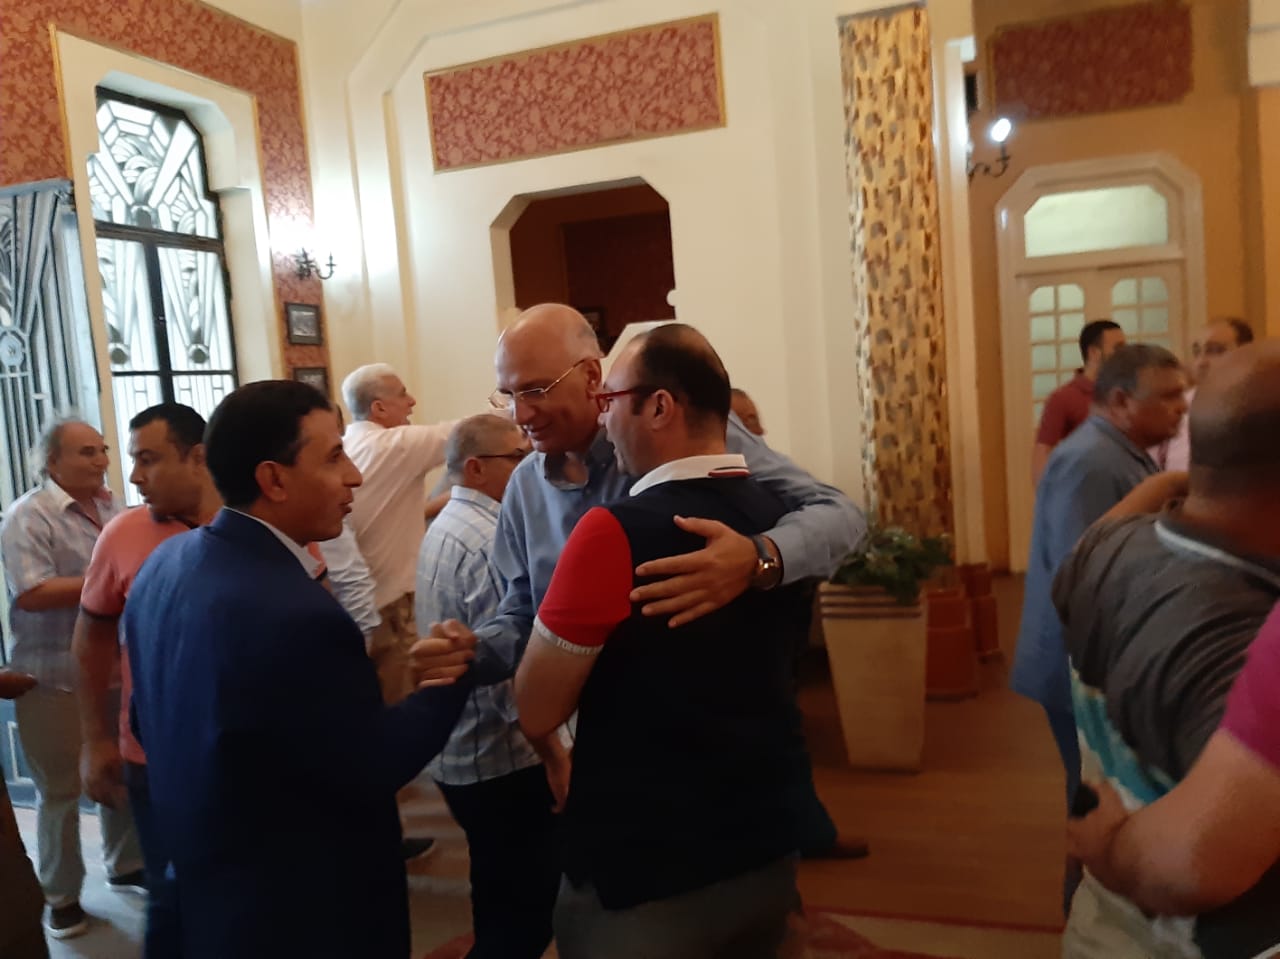 مجلس الجبلاية واعضاء الجمعية العمومية في افطار الشامي بالمحلة (11)